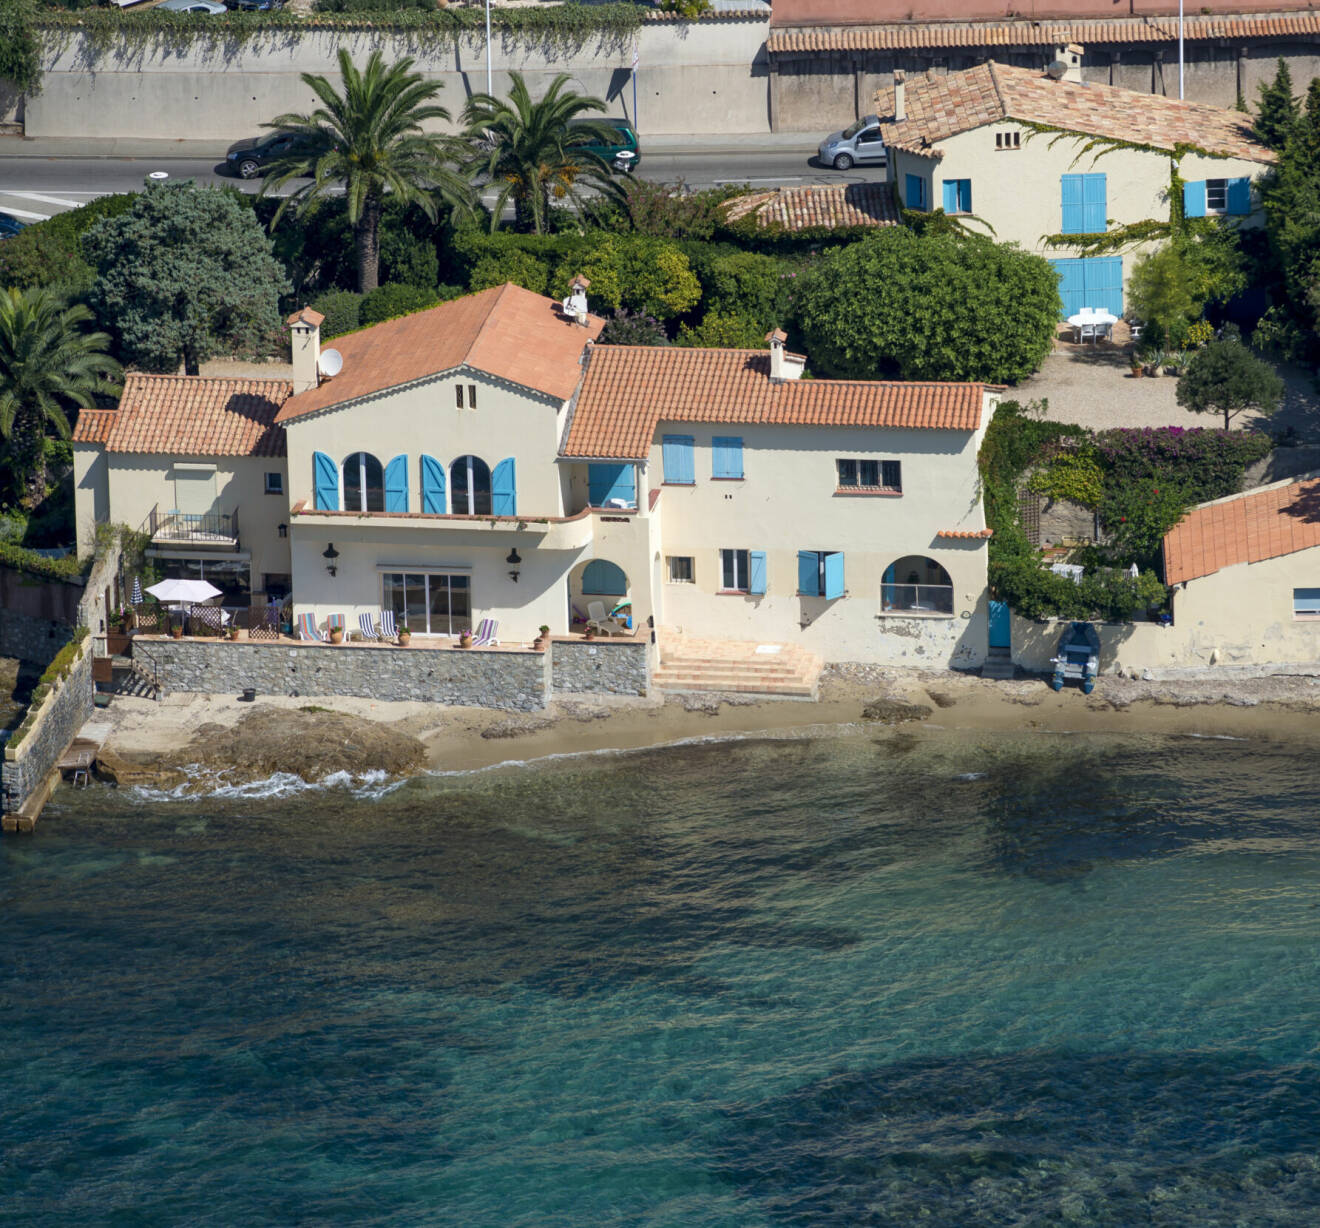 Kungafamiljens hus Villa Mirage i Sainte Maxime på Franska rivieran